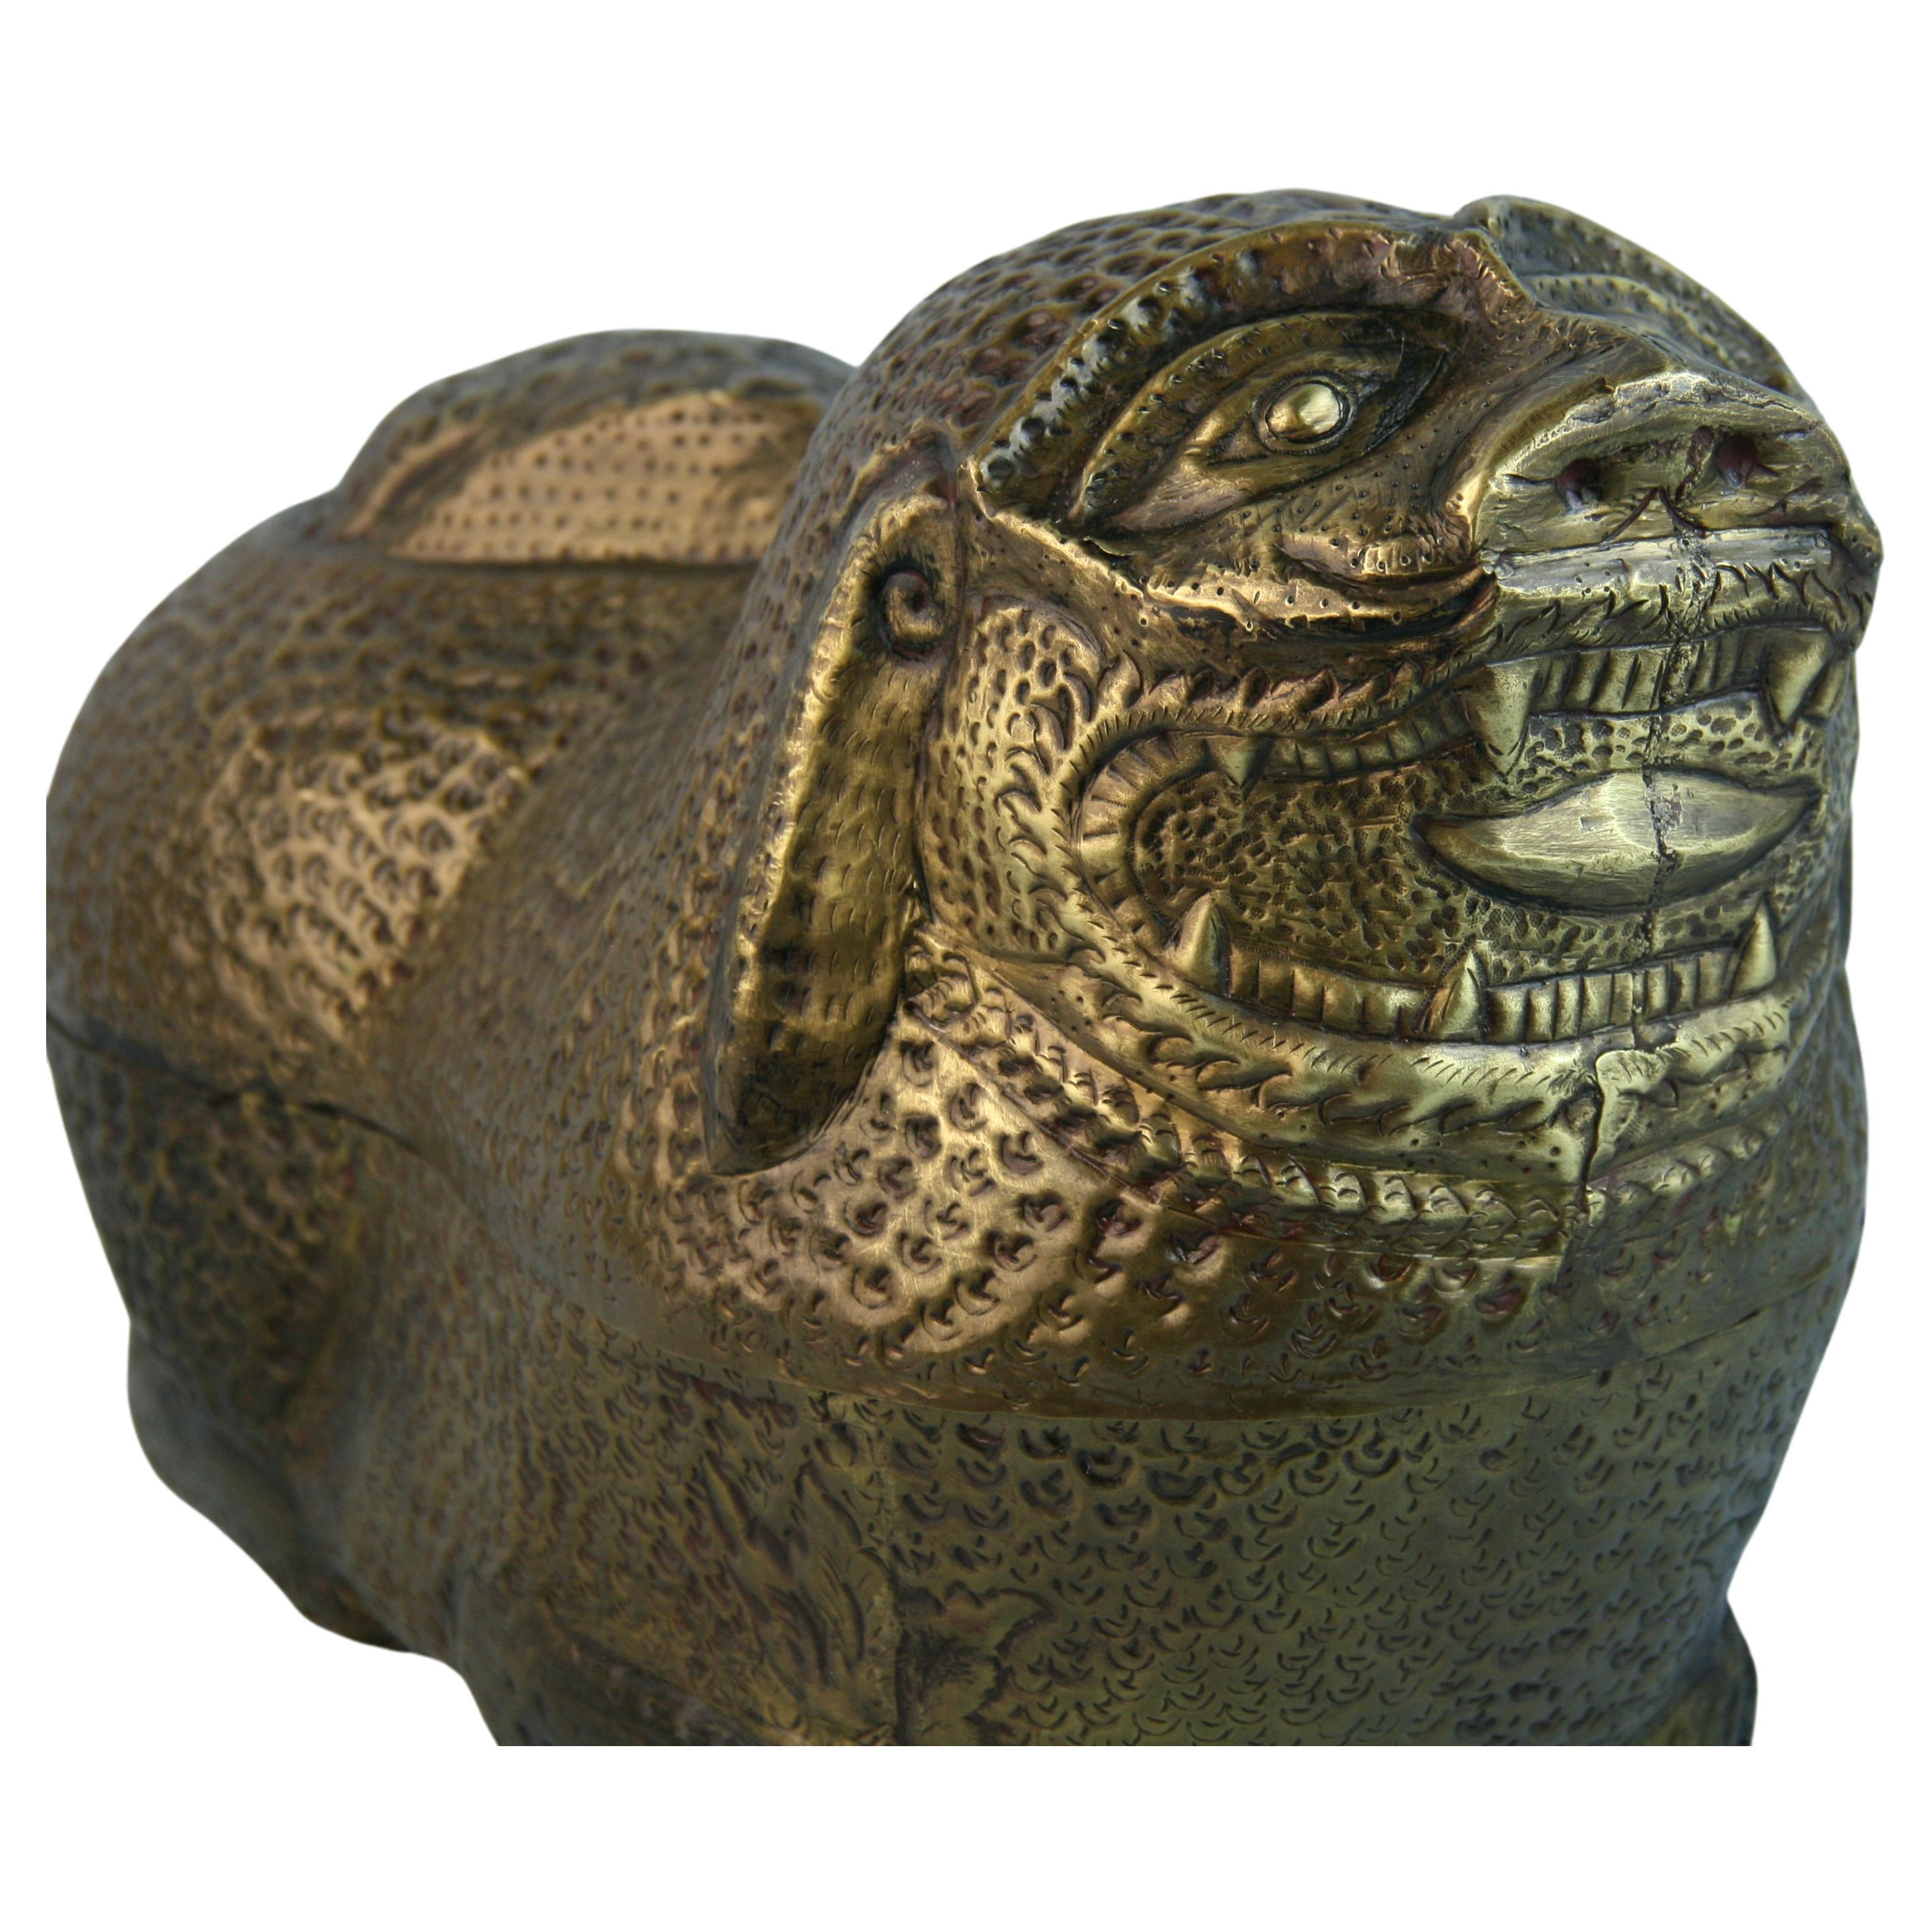 1194 Hand hammered brass Japanese Foo Lion sculpture/storage box.